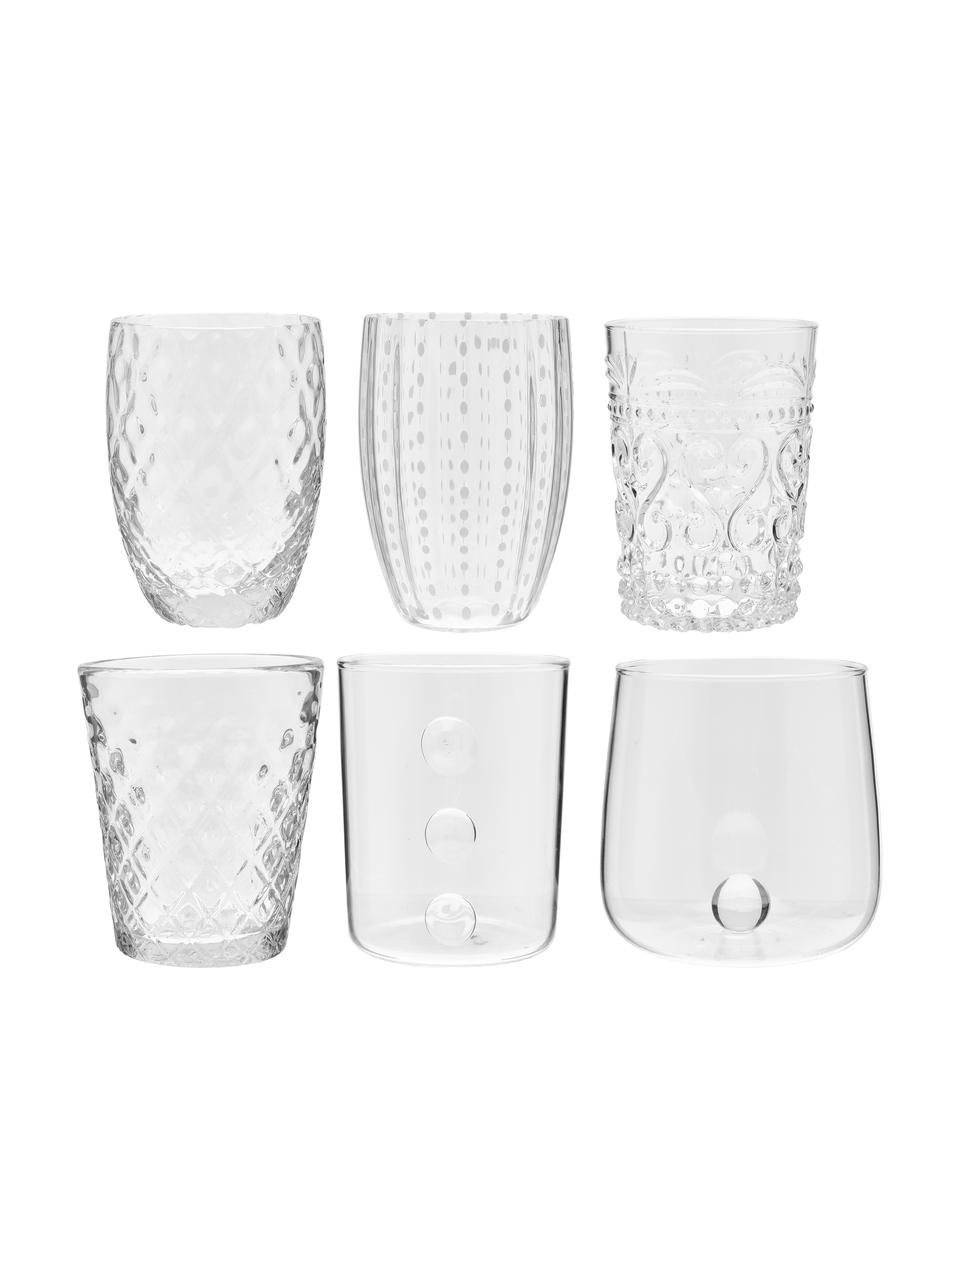 Mundgeblasene Wassergläser Melting Pot Calm mit unterschiedlichem Relief, 6er-Set, Glas, Transparent, Weiss, Ø 7-10 x H 9-11 cm, 270 bis 440 ml